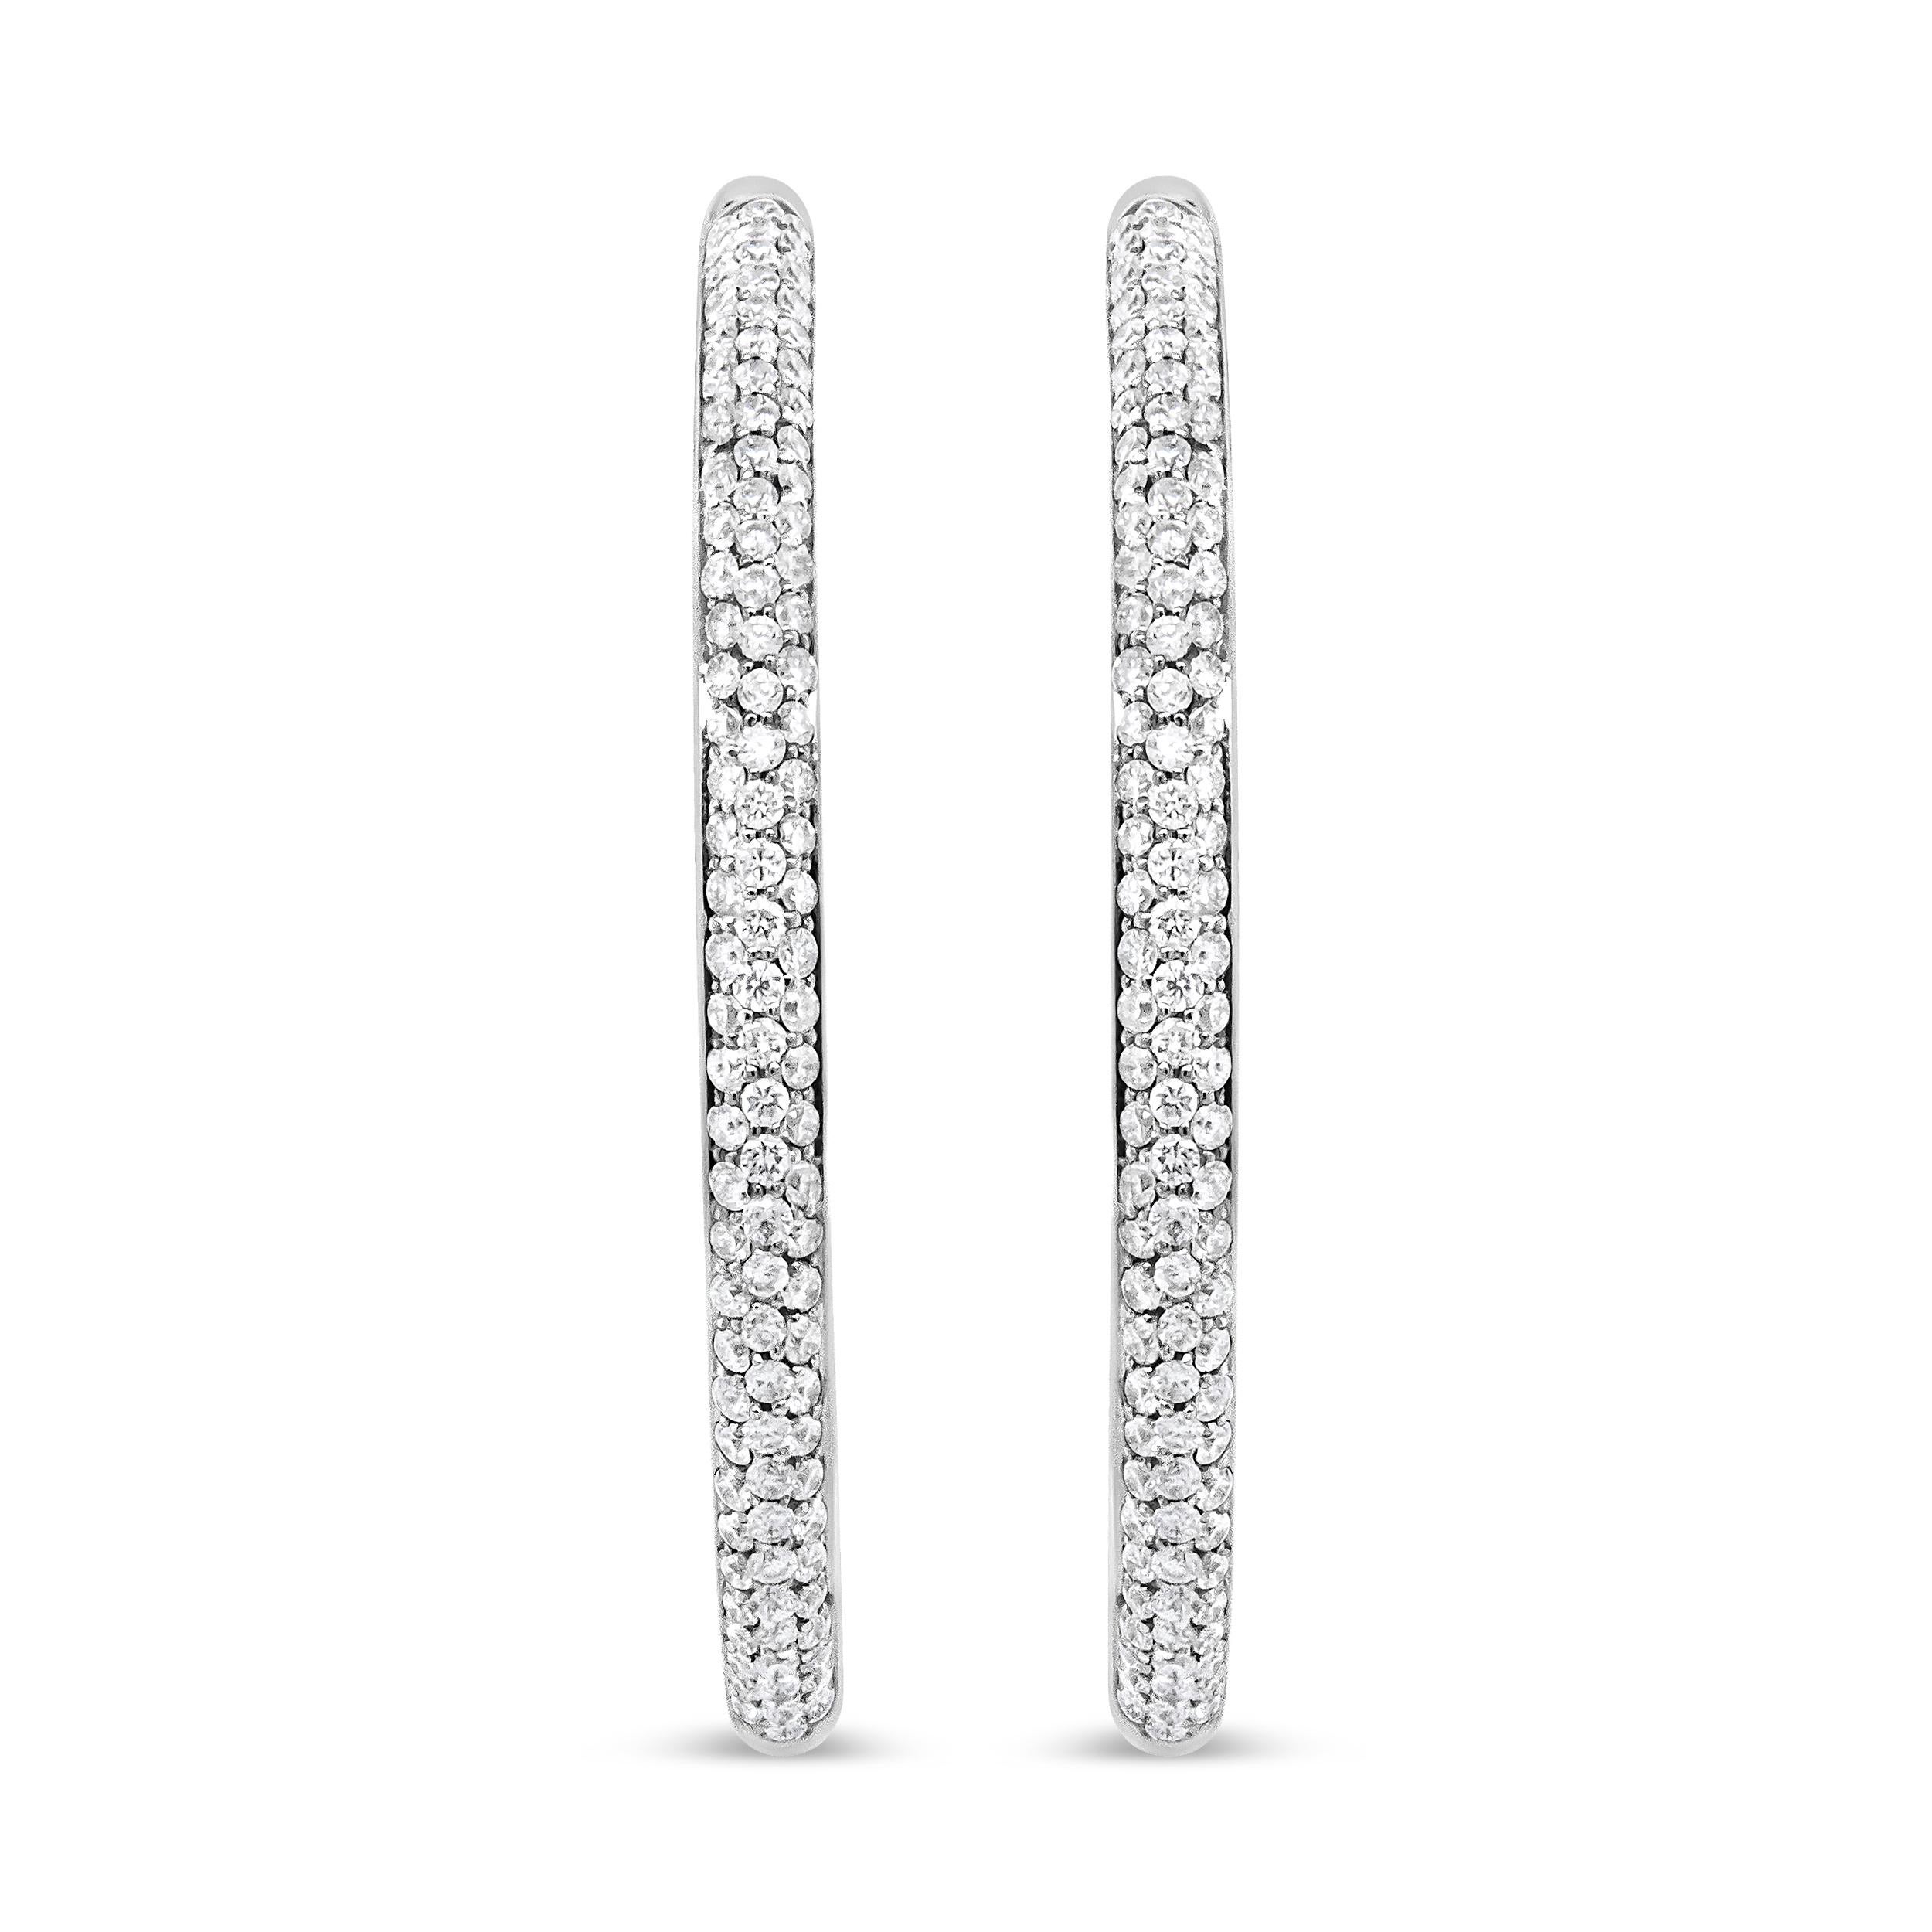 Diese atemberaubenden Diamantringe aus luxuriösem 18-karätigem Weißgold sind eine glamouröse Interpretation eines klassischen Designs und werden an Ihren Ohrringen funkeln. Das Gold reflektiert wunderschön auf den atemberaubenden Diamanten mit einem